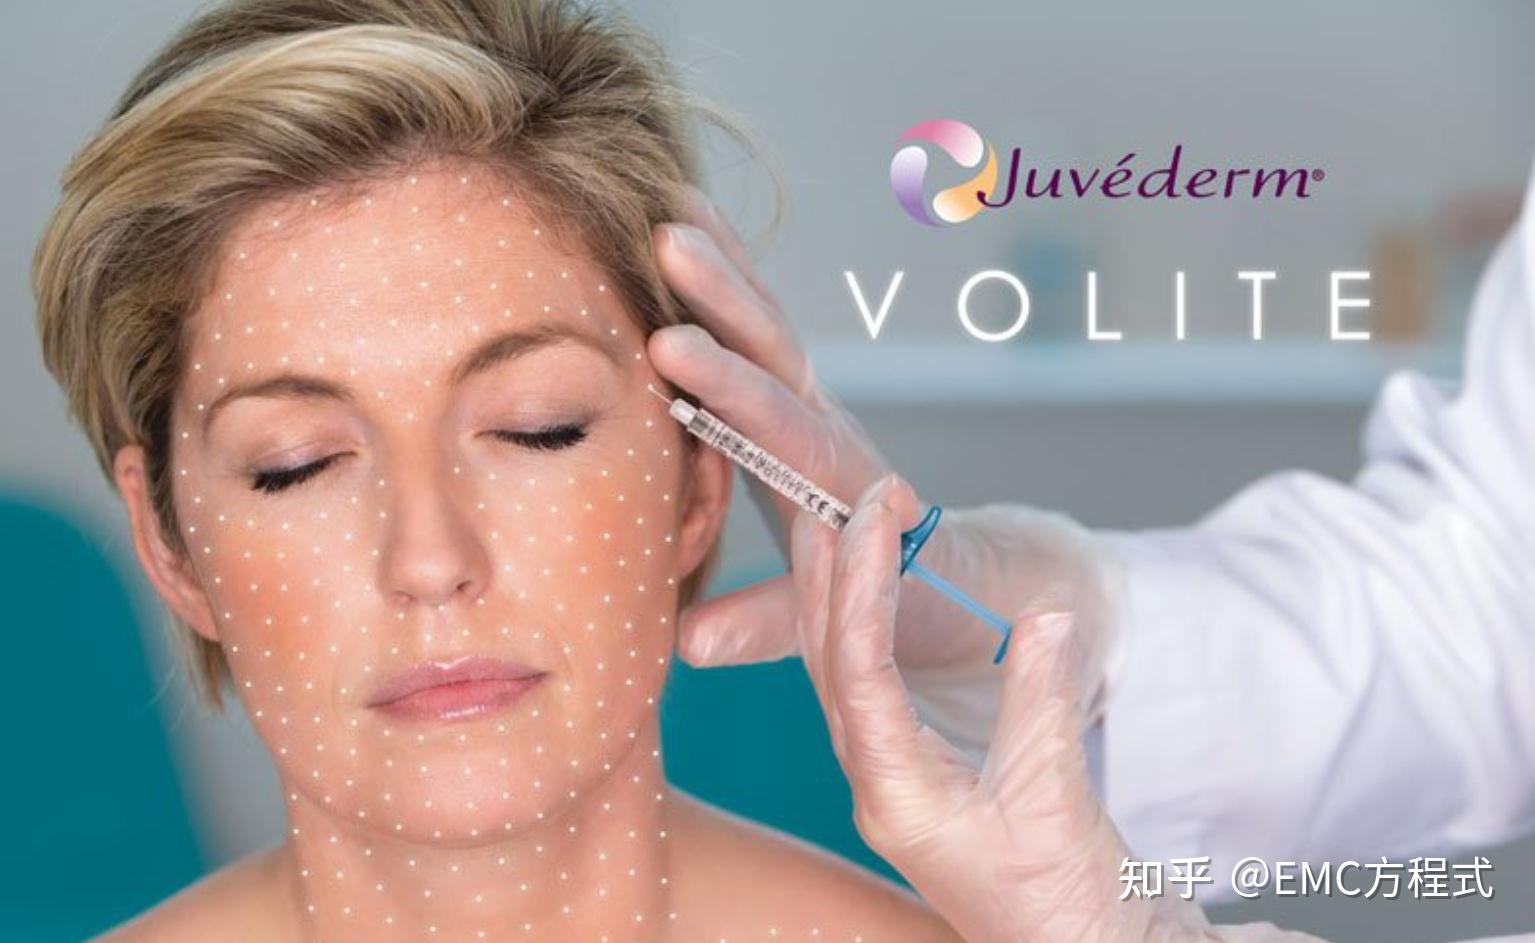 Juvederm Volux 乔雅登长效塑形玻尿酸 | Reface Clinic 香港微整形中心